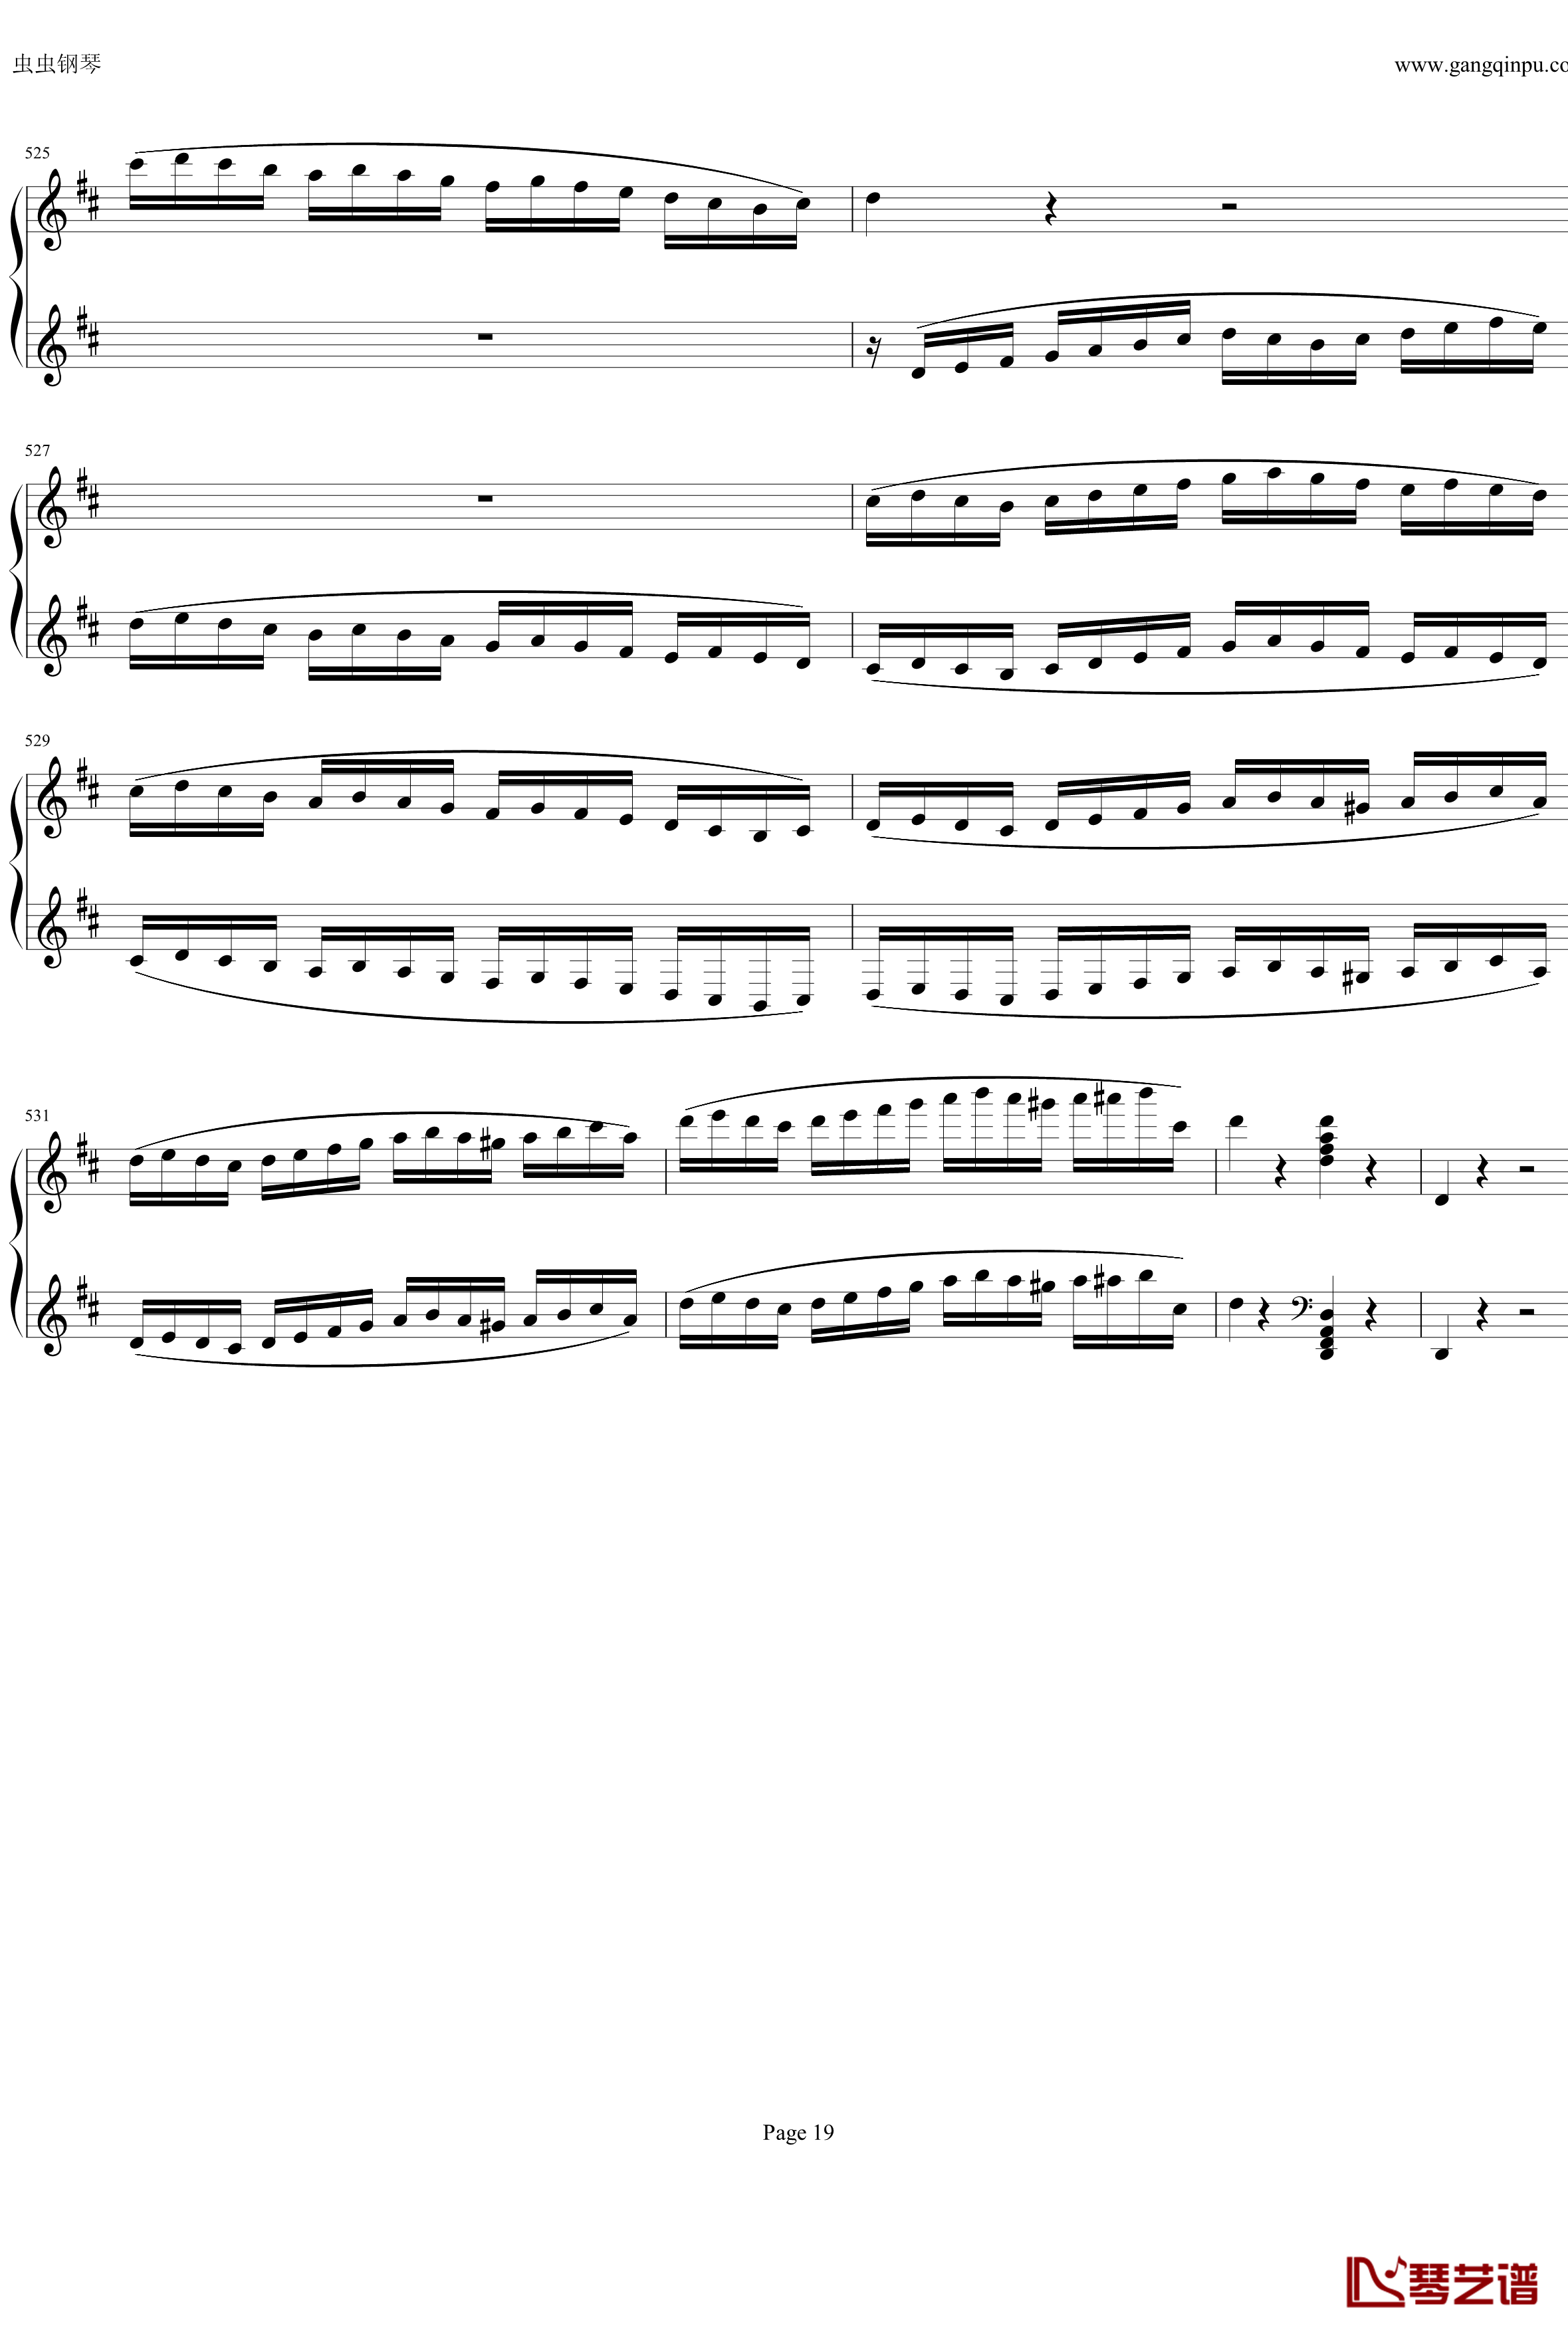 钢琴协奏曲Op61第一乐章钢琴谱-贝多芬-beethoven19